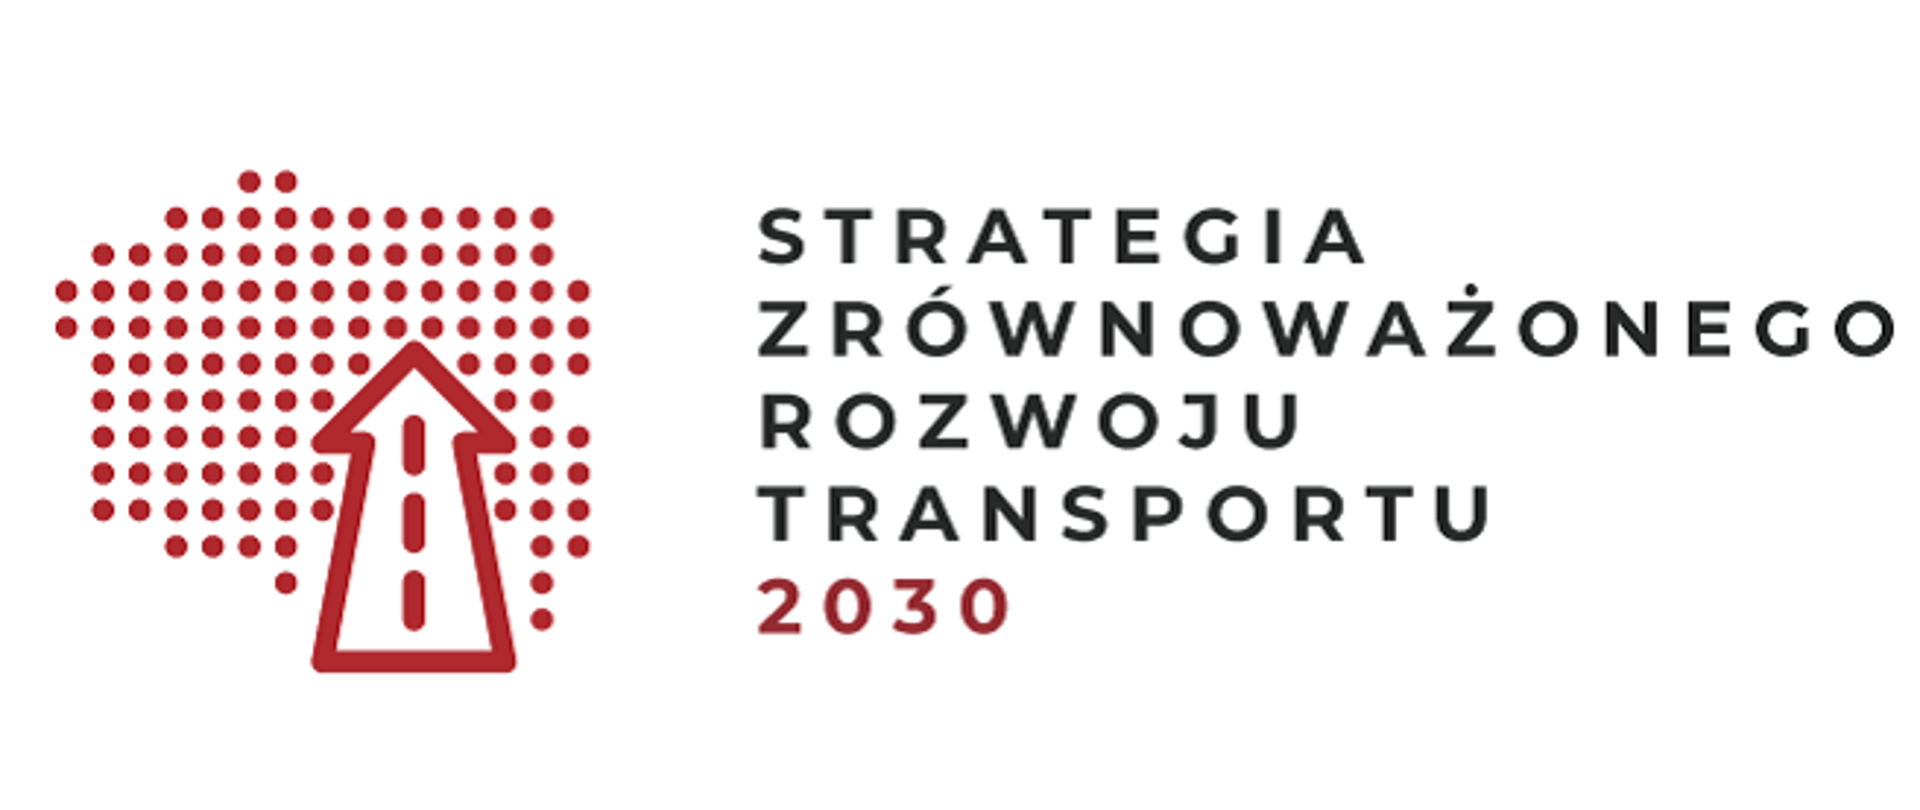 Strategia Zrównoważonego Rozwoju Transportu do 2030 r. - logotyp